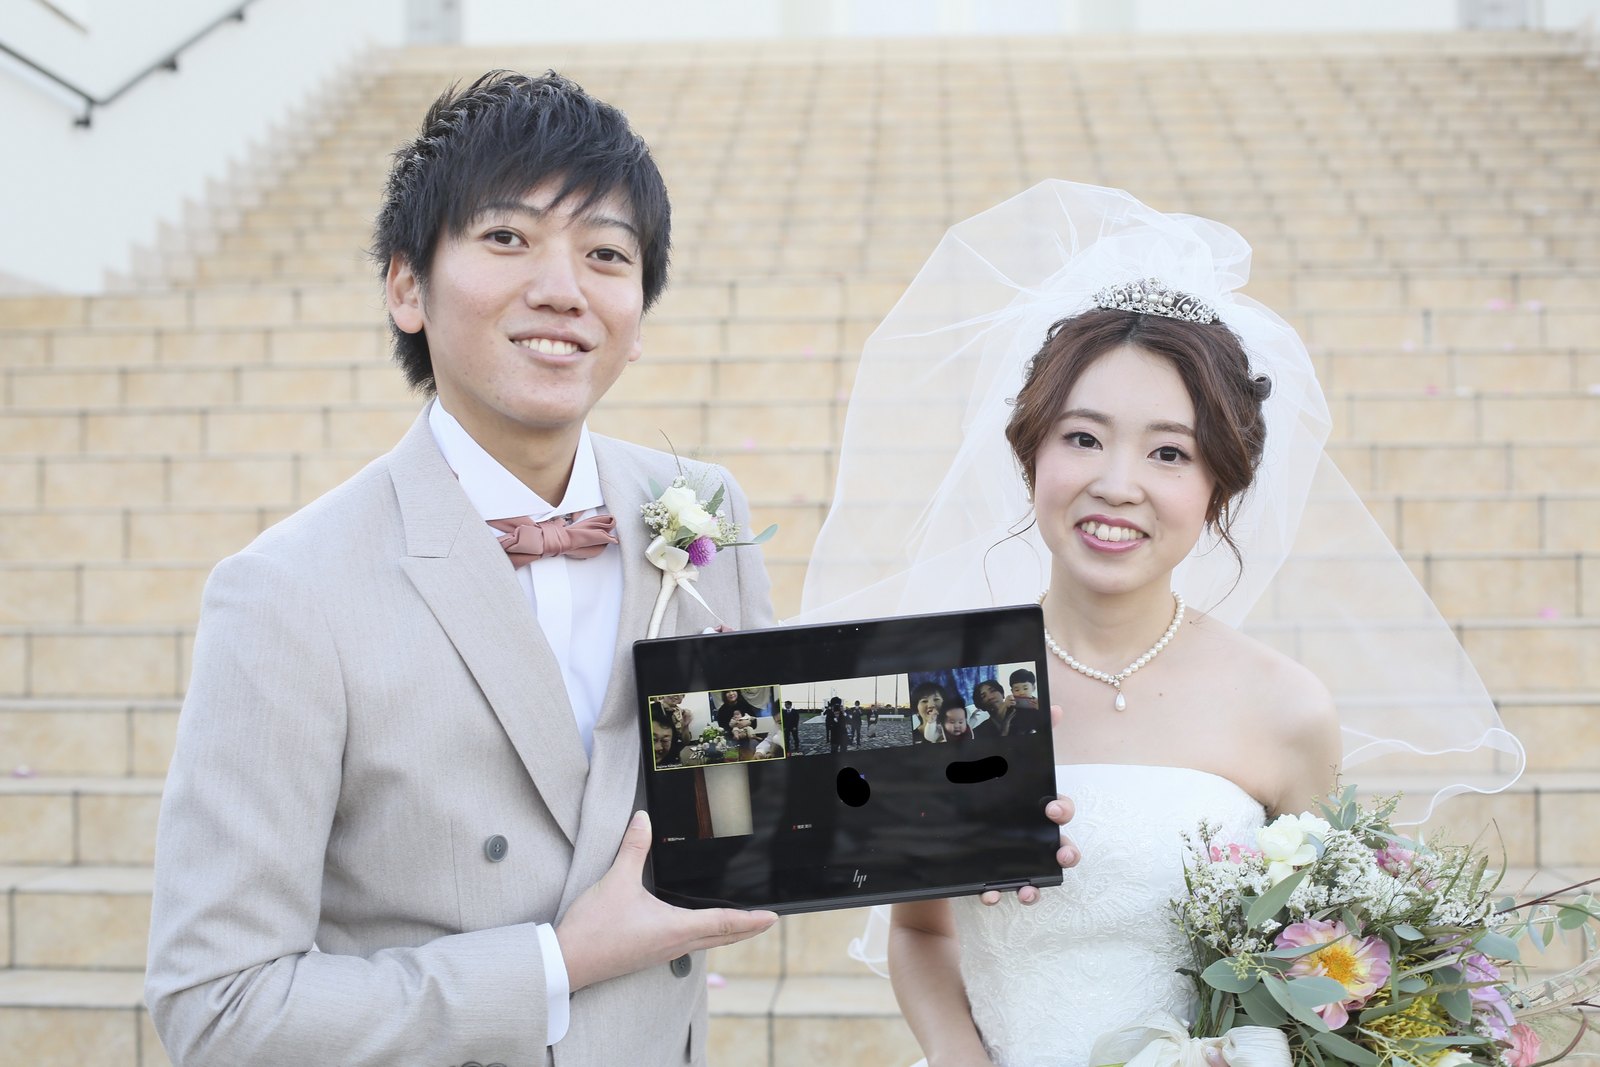 徳島県の結婚式場ブランアンジュでZOOMの画面越しに映るゲストと記念写真